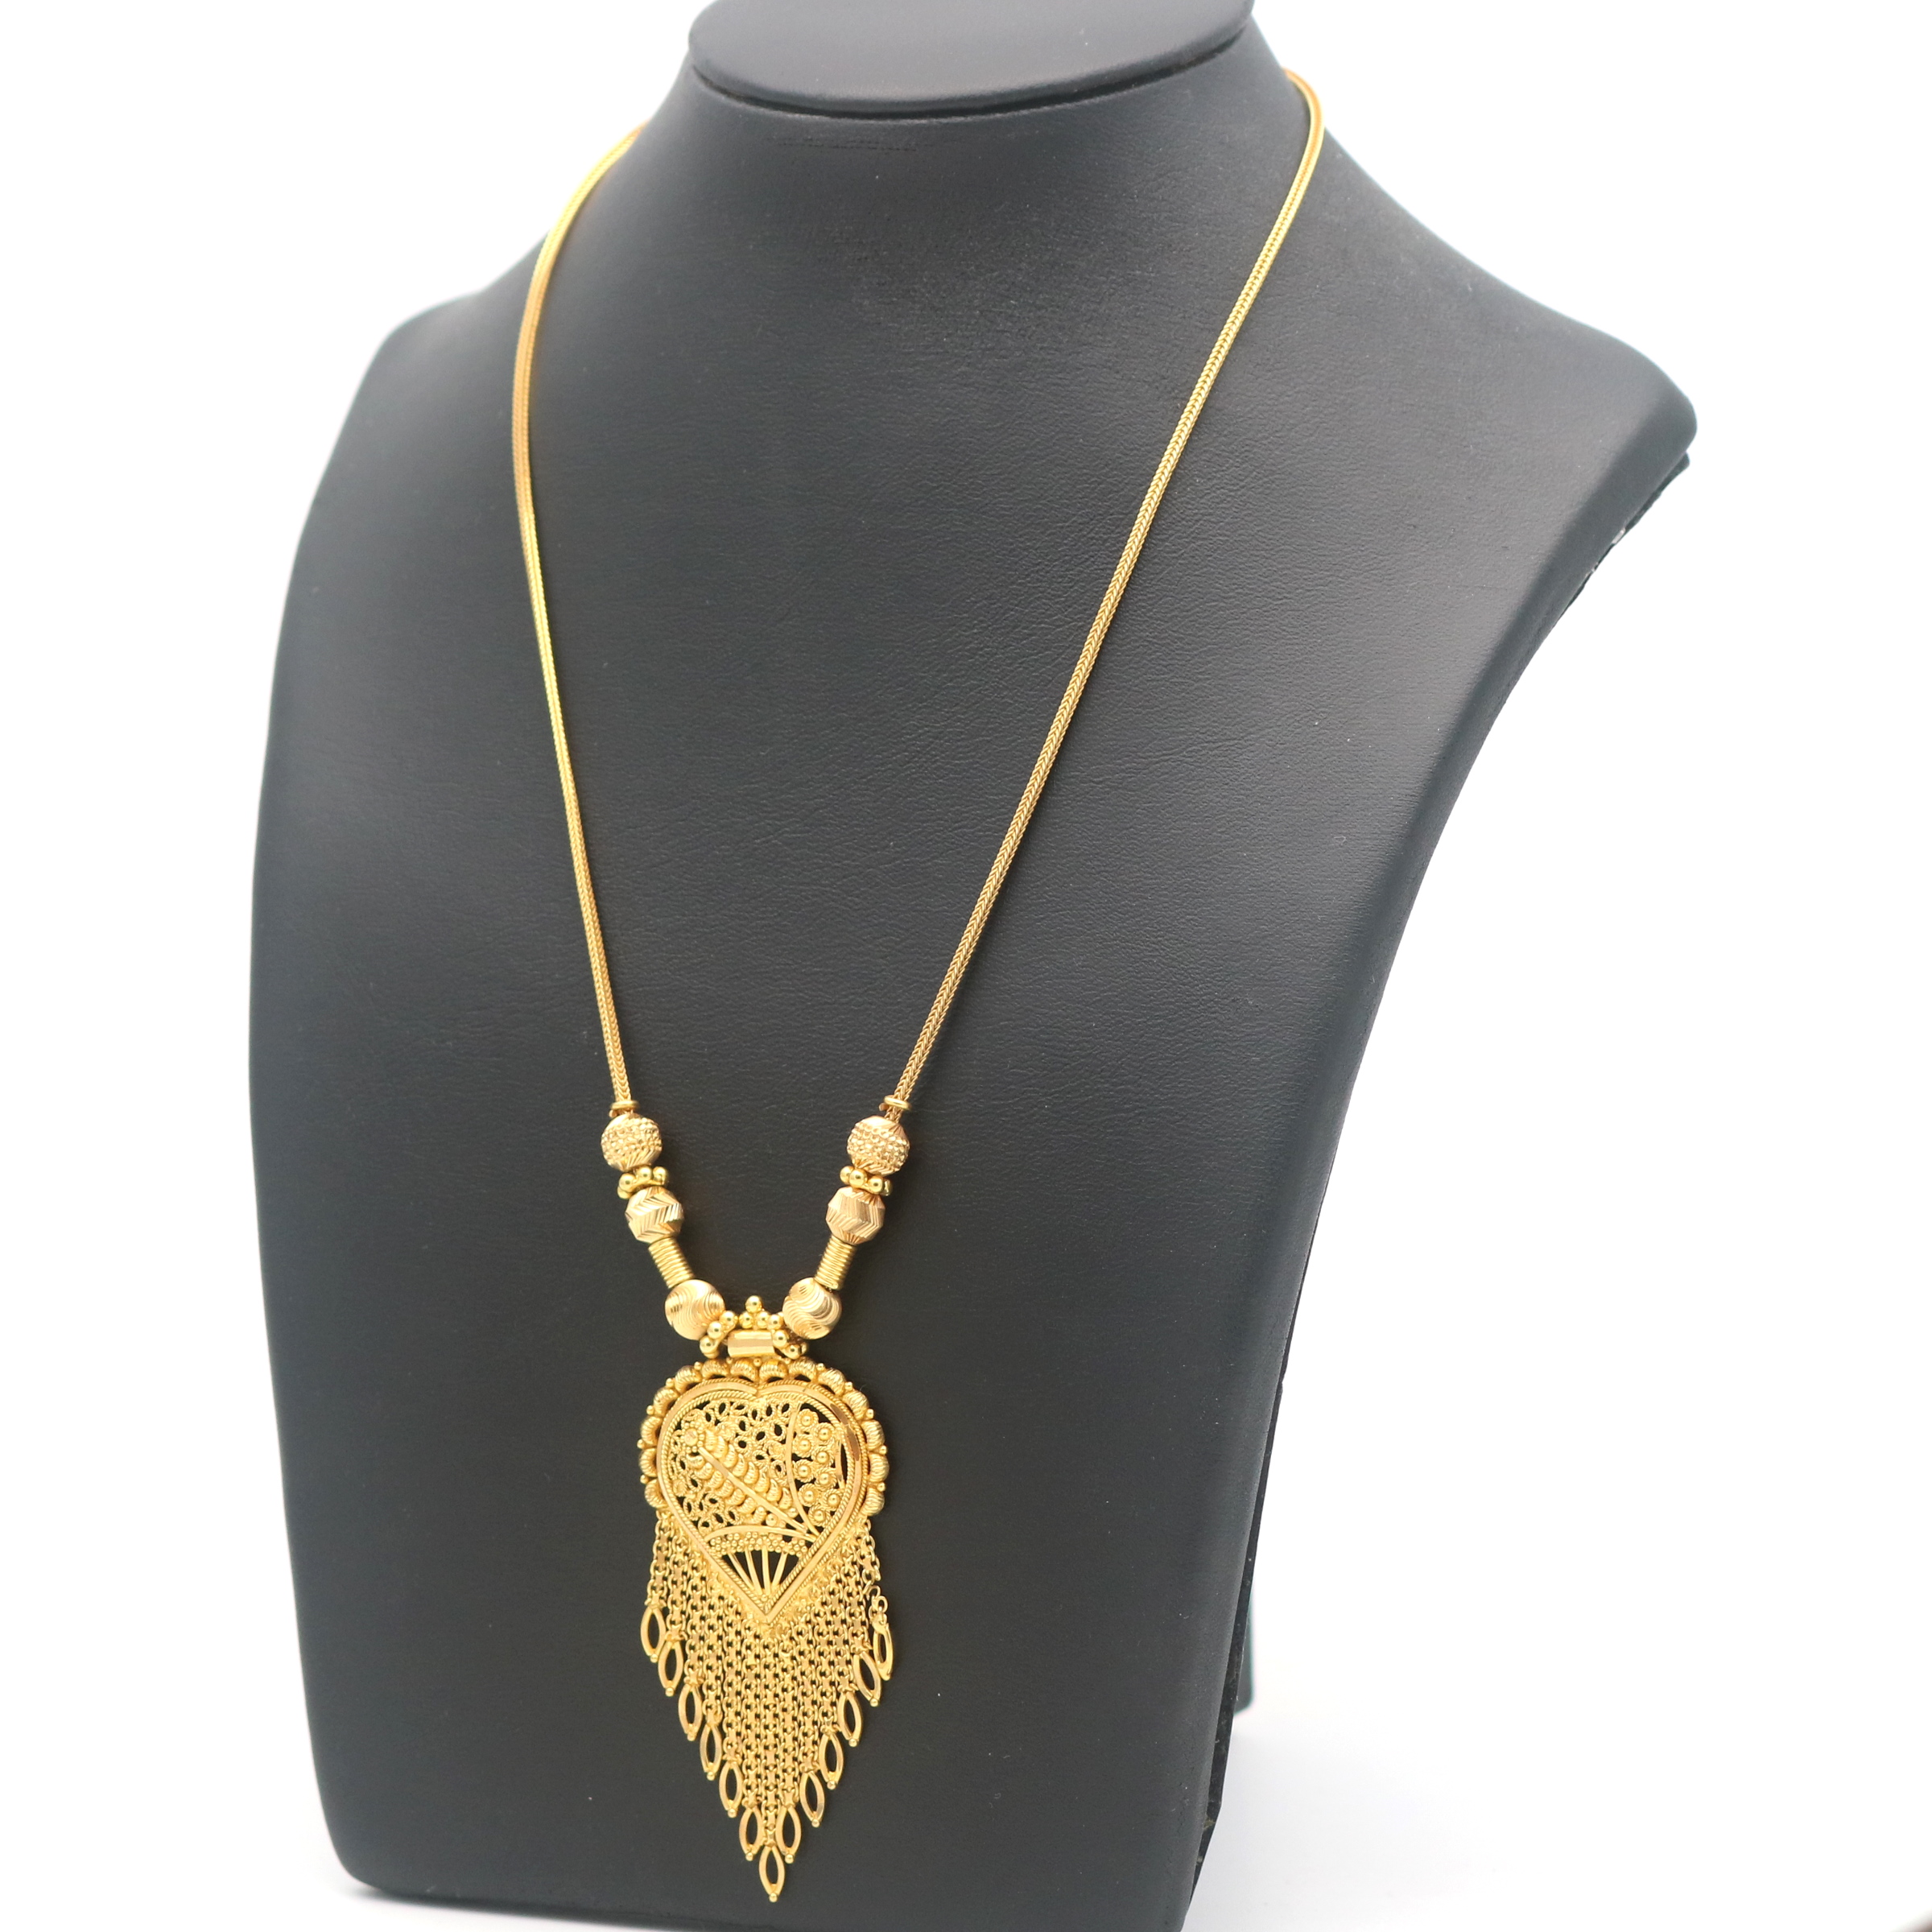 Collier aus 585er Gelbgold, 14 Kt, Länge 54 cm - zeitlose Eleganz für jeden  Anlass | Juweliero - Juwelier Online Shop & Goldankauf